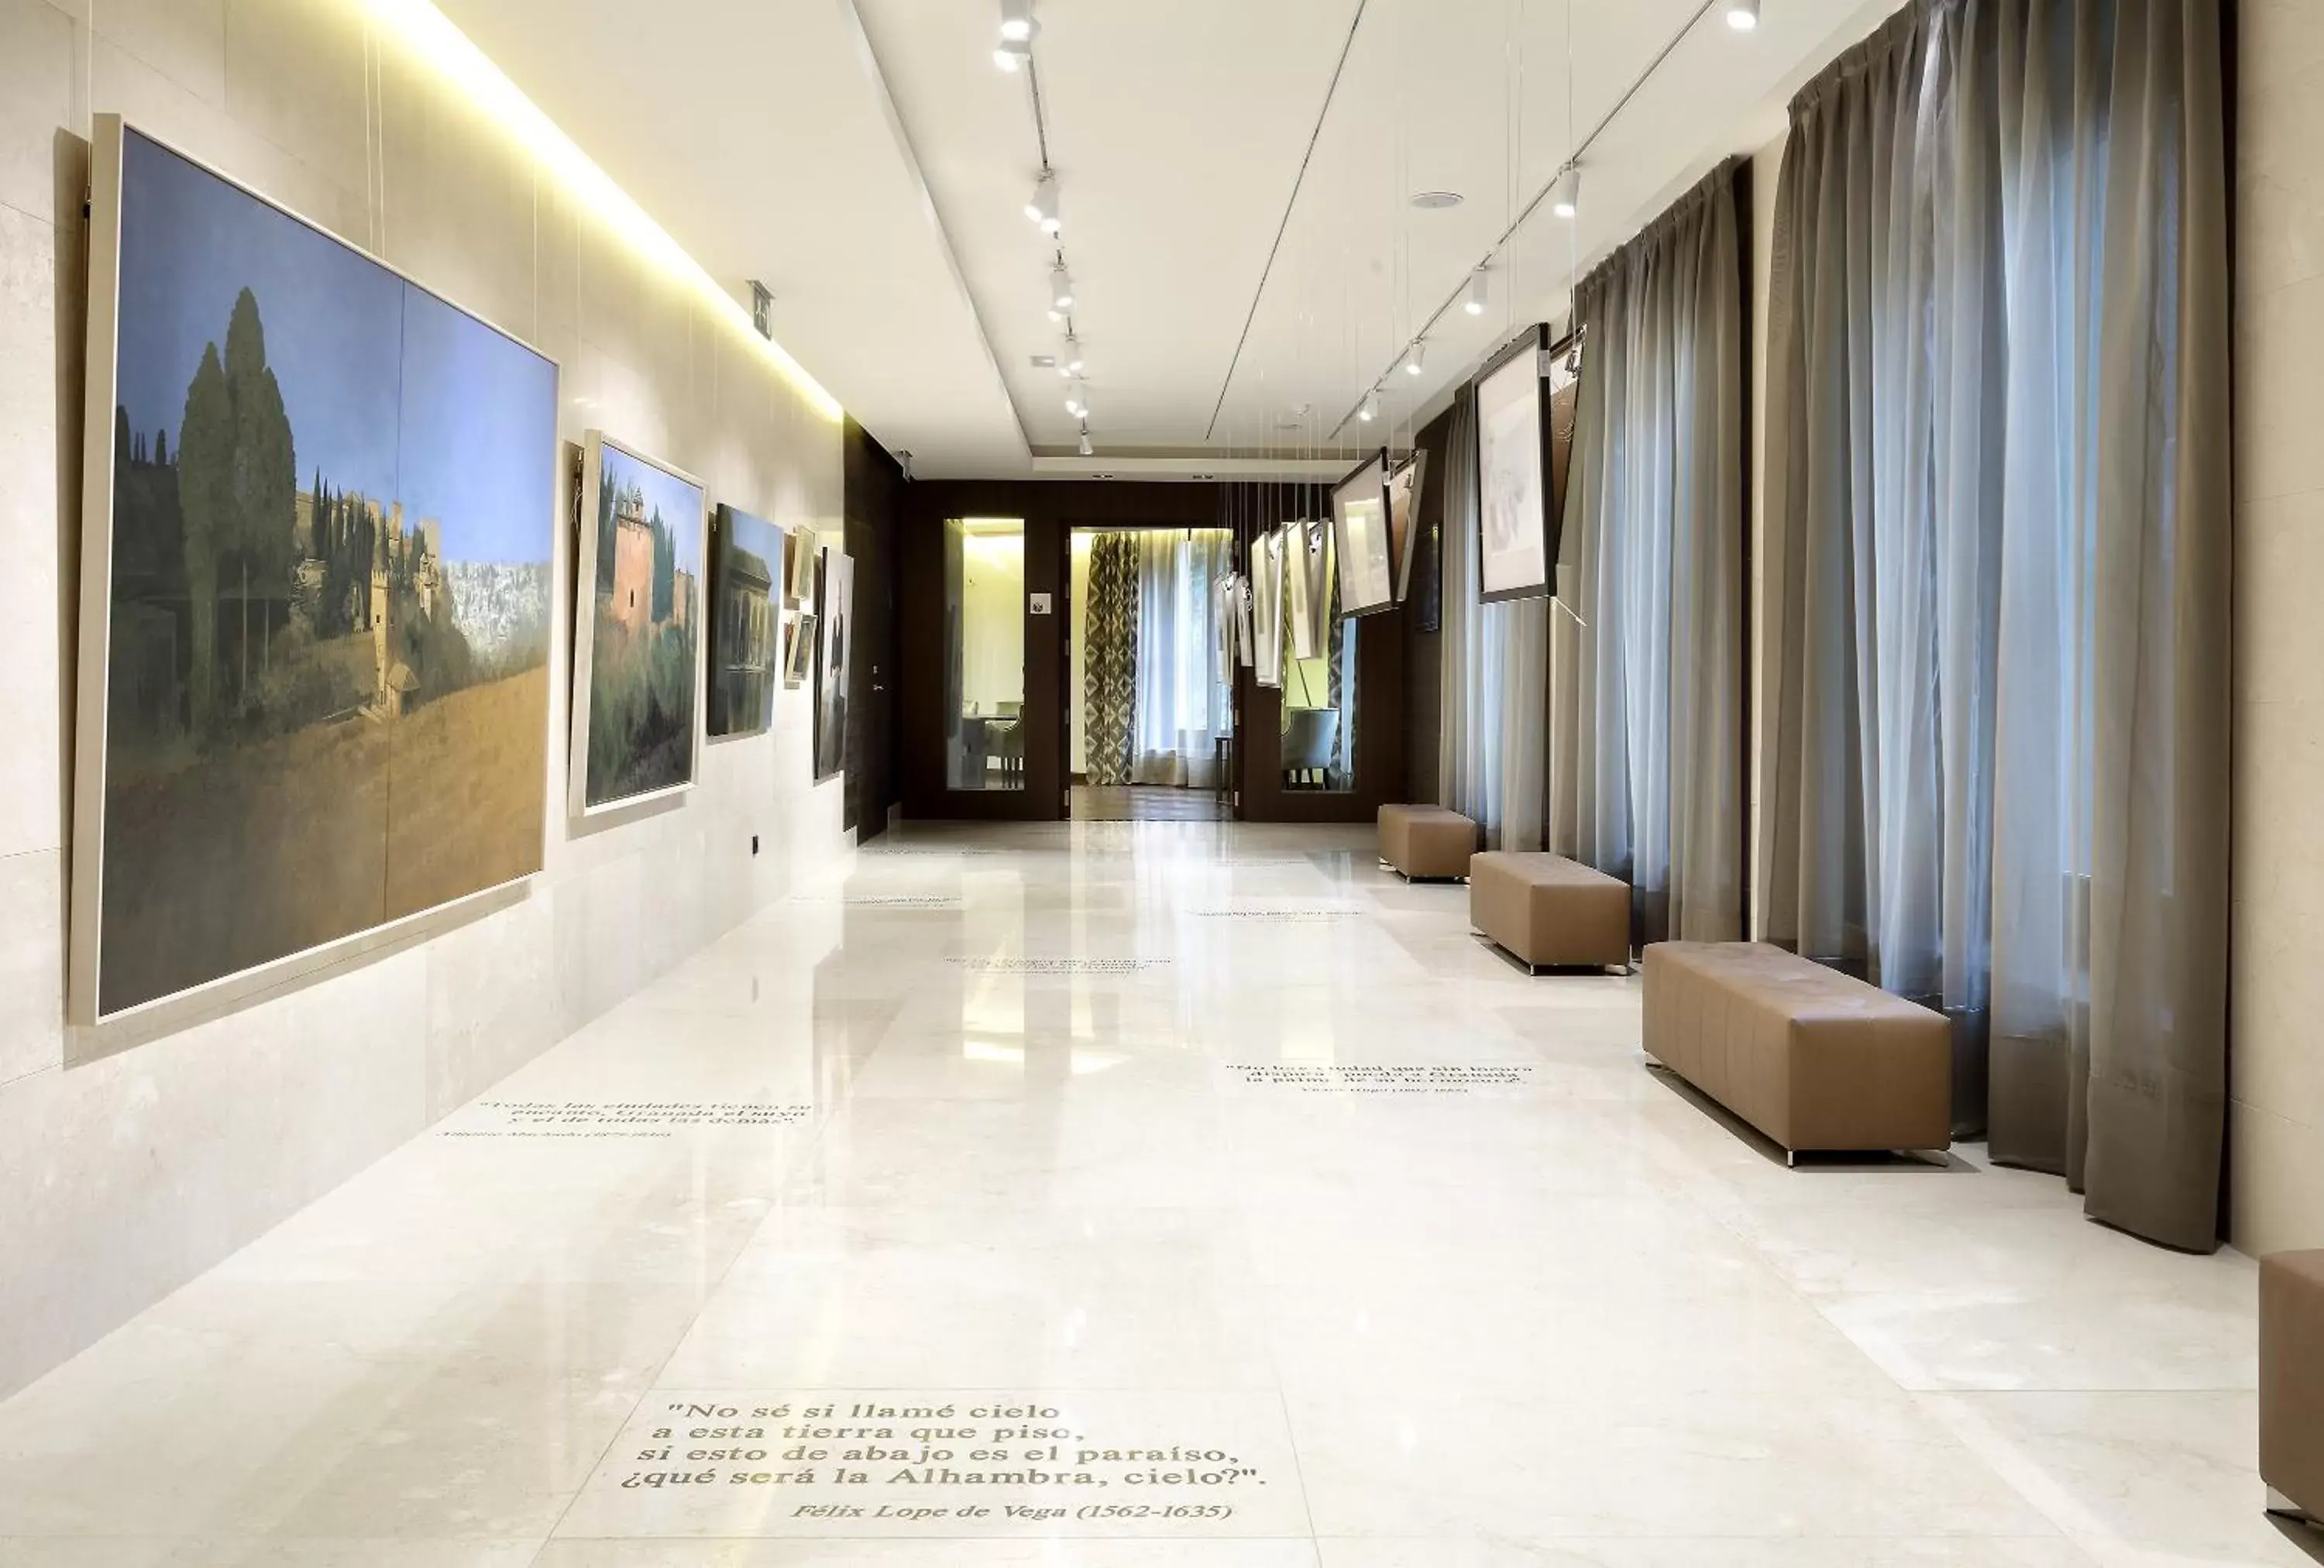 Lobby or reception, Lobby/Reception in Áurea Washington Irving by Eurostars Hotel Company